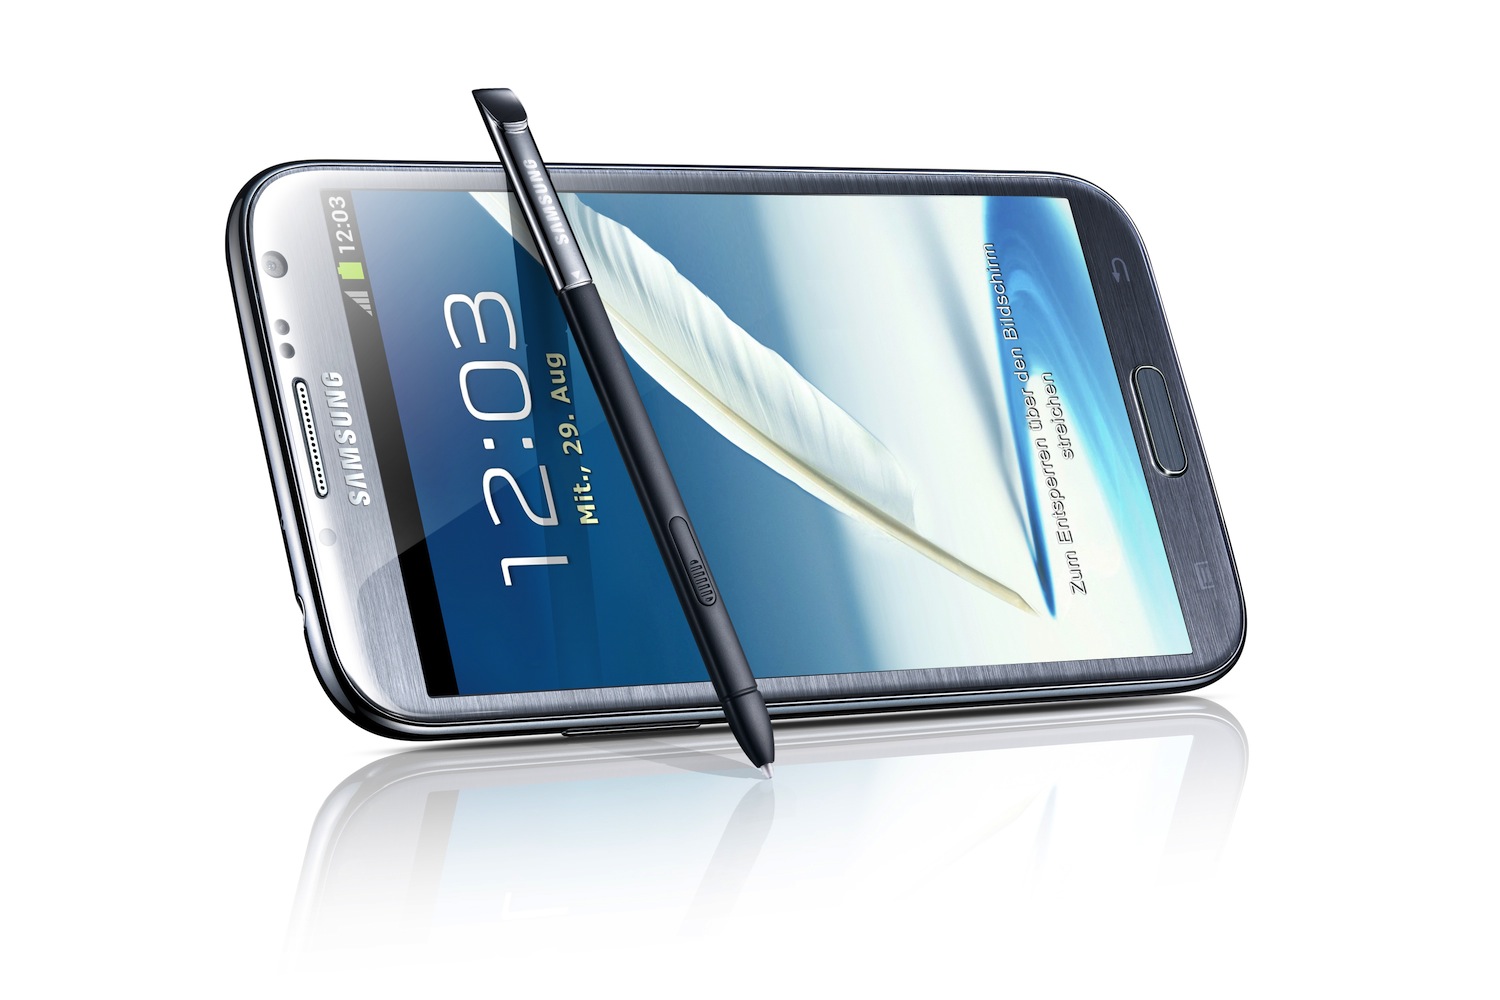 Samsung Galaxy Note Ii Gt N7100 Notebookcheck Net External Reviews